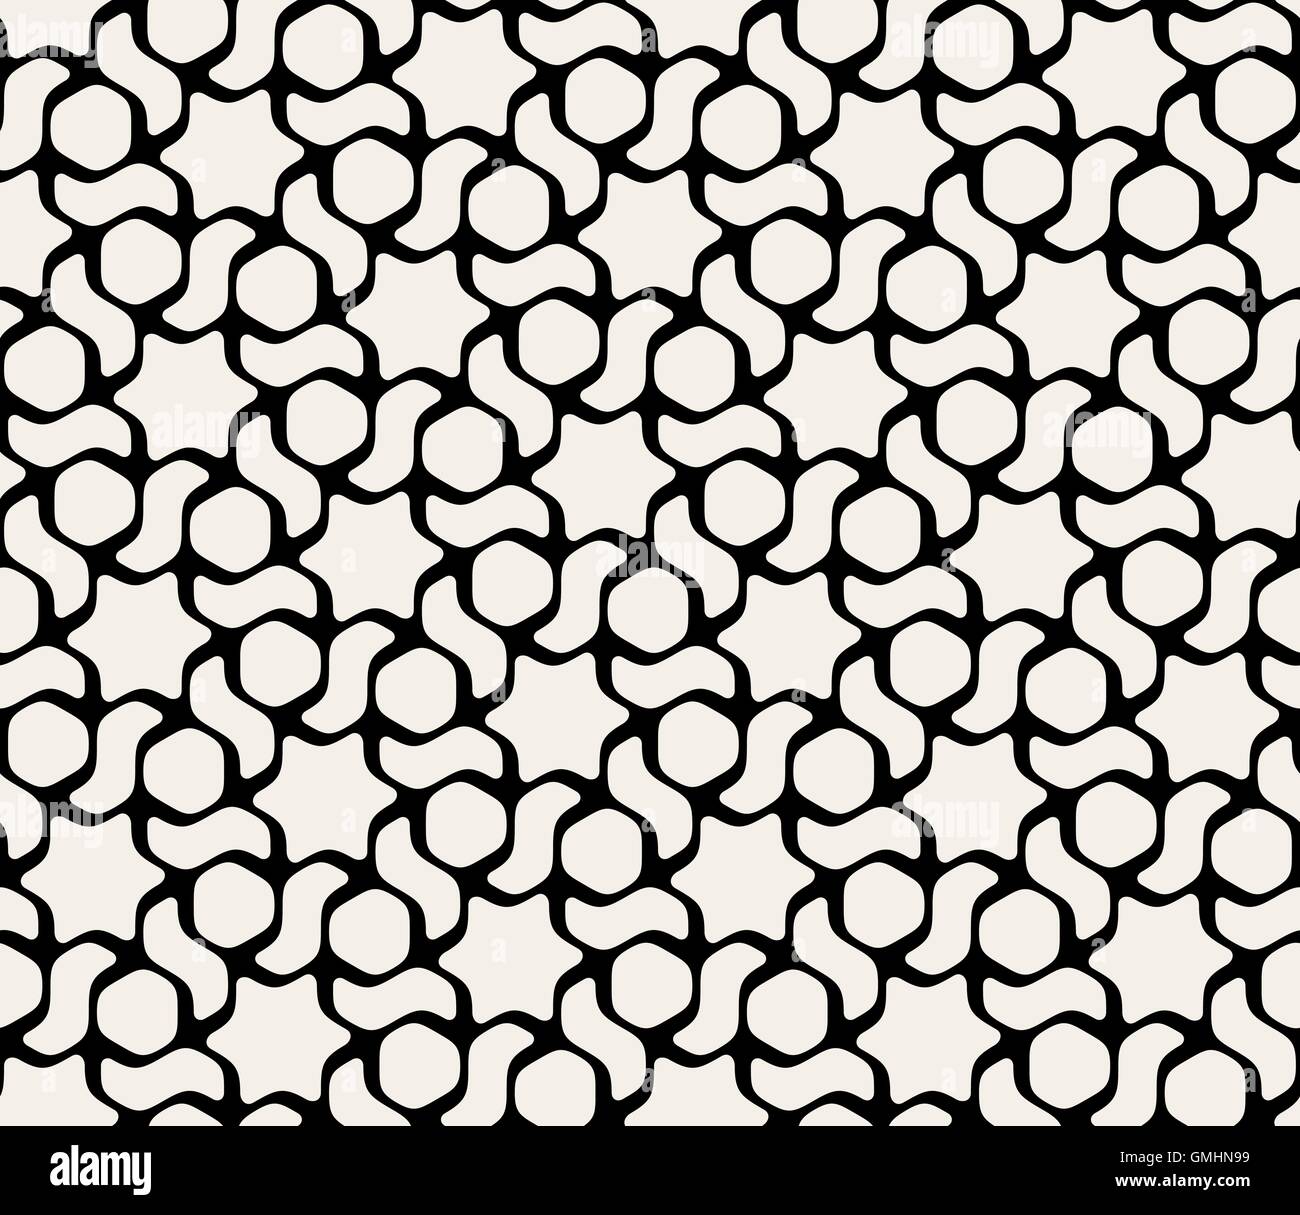 Vektor nahtlose schwarz-weiß sechseckigen abgerundeten Muster Stock Vektor